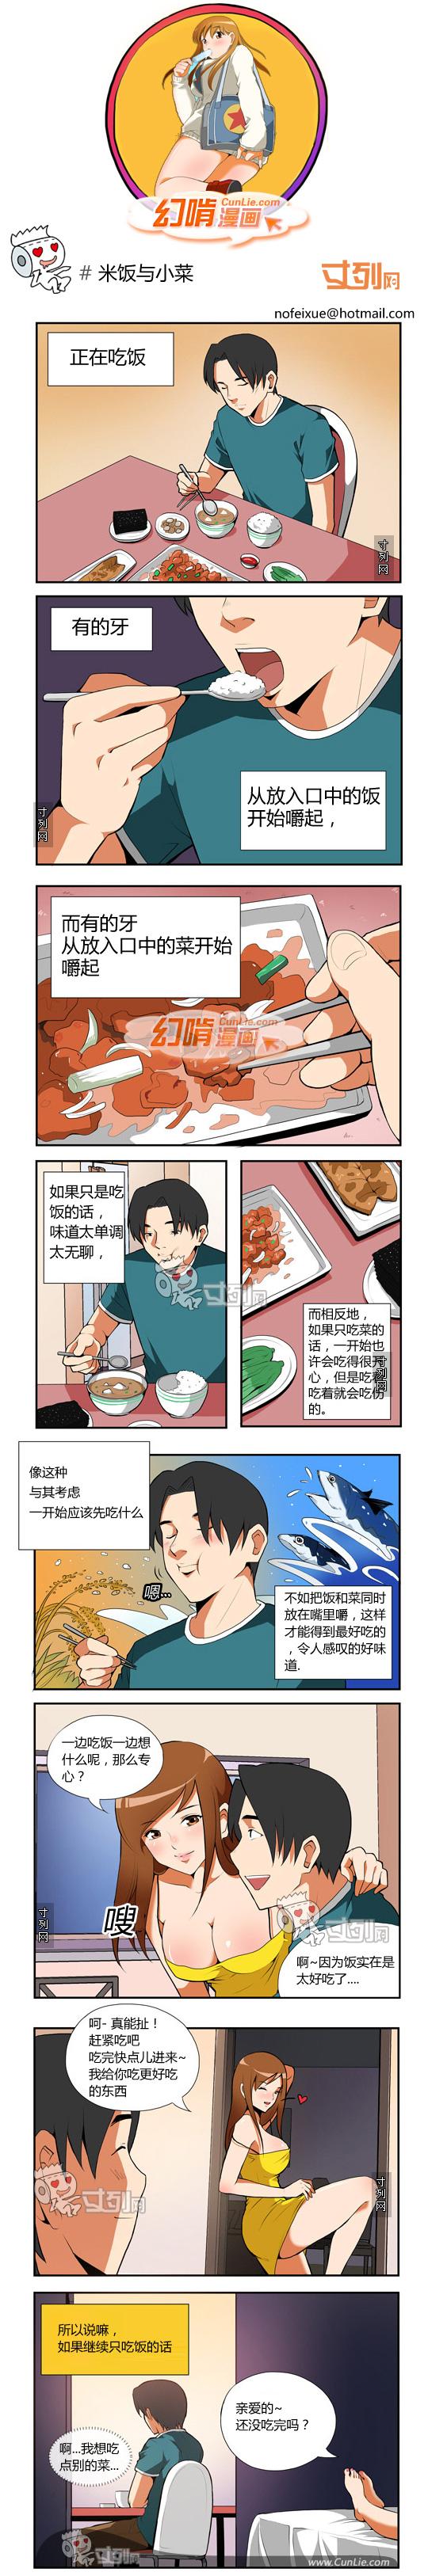 幻啃漫画米饭与小菜